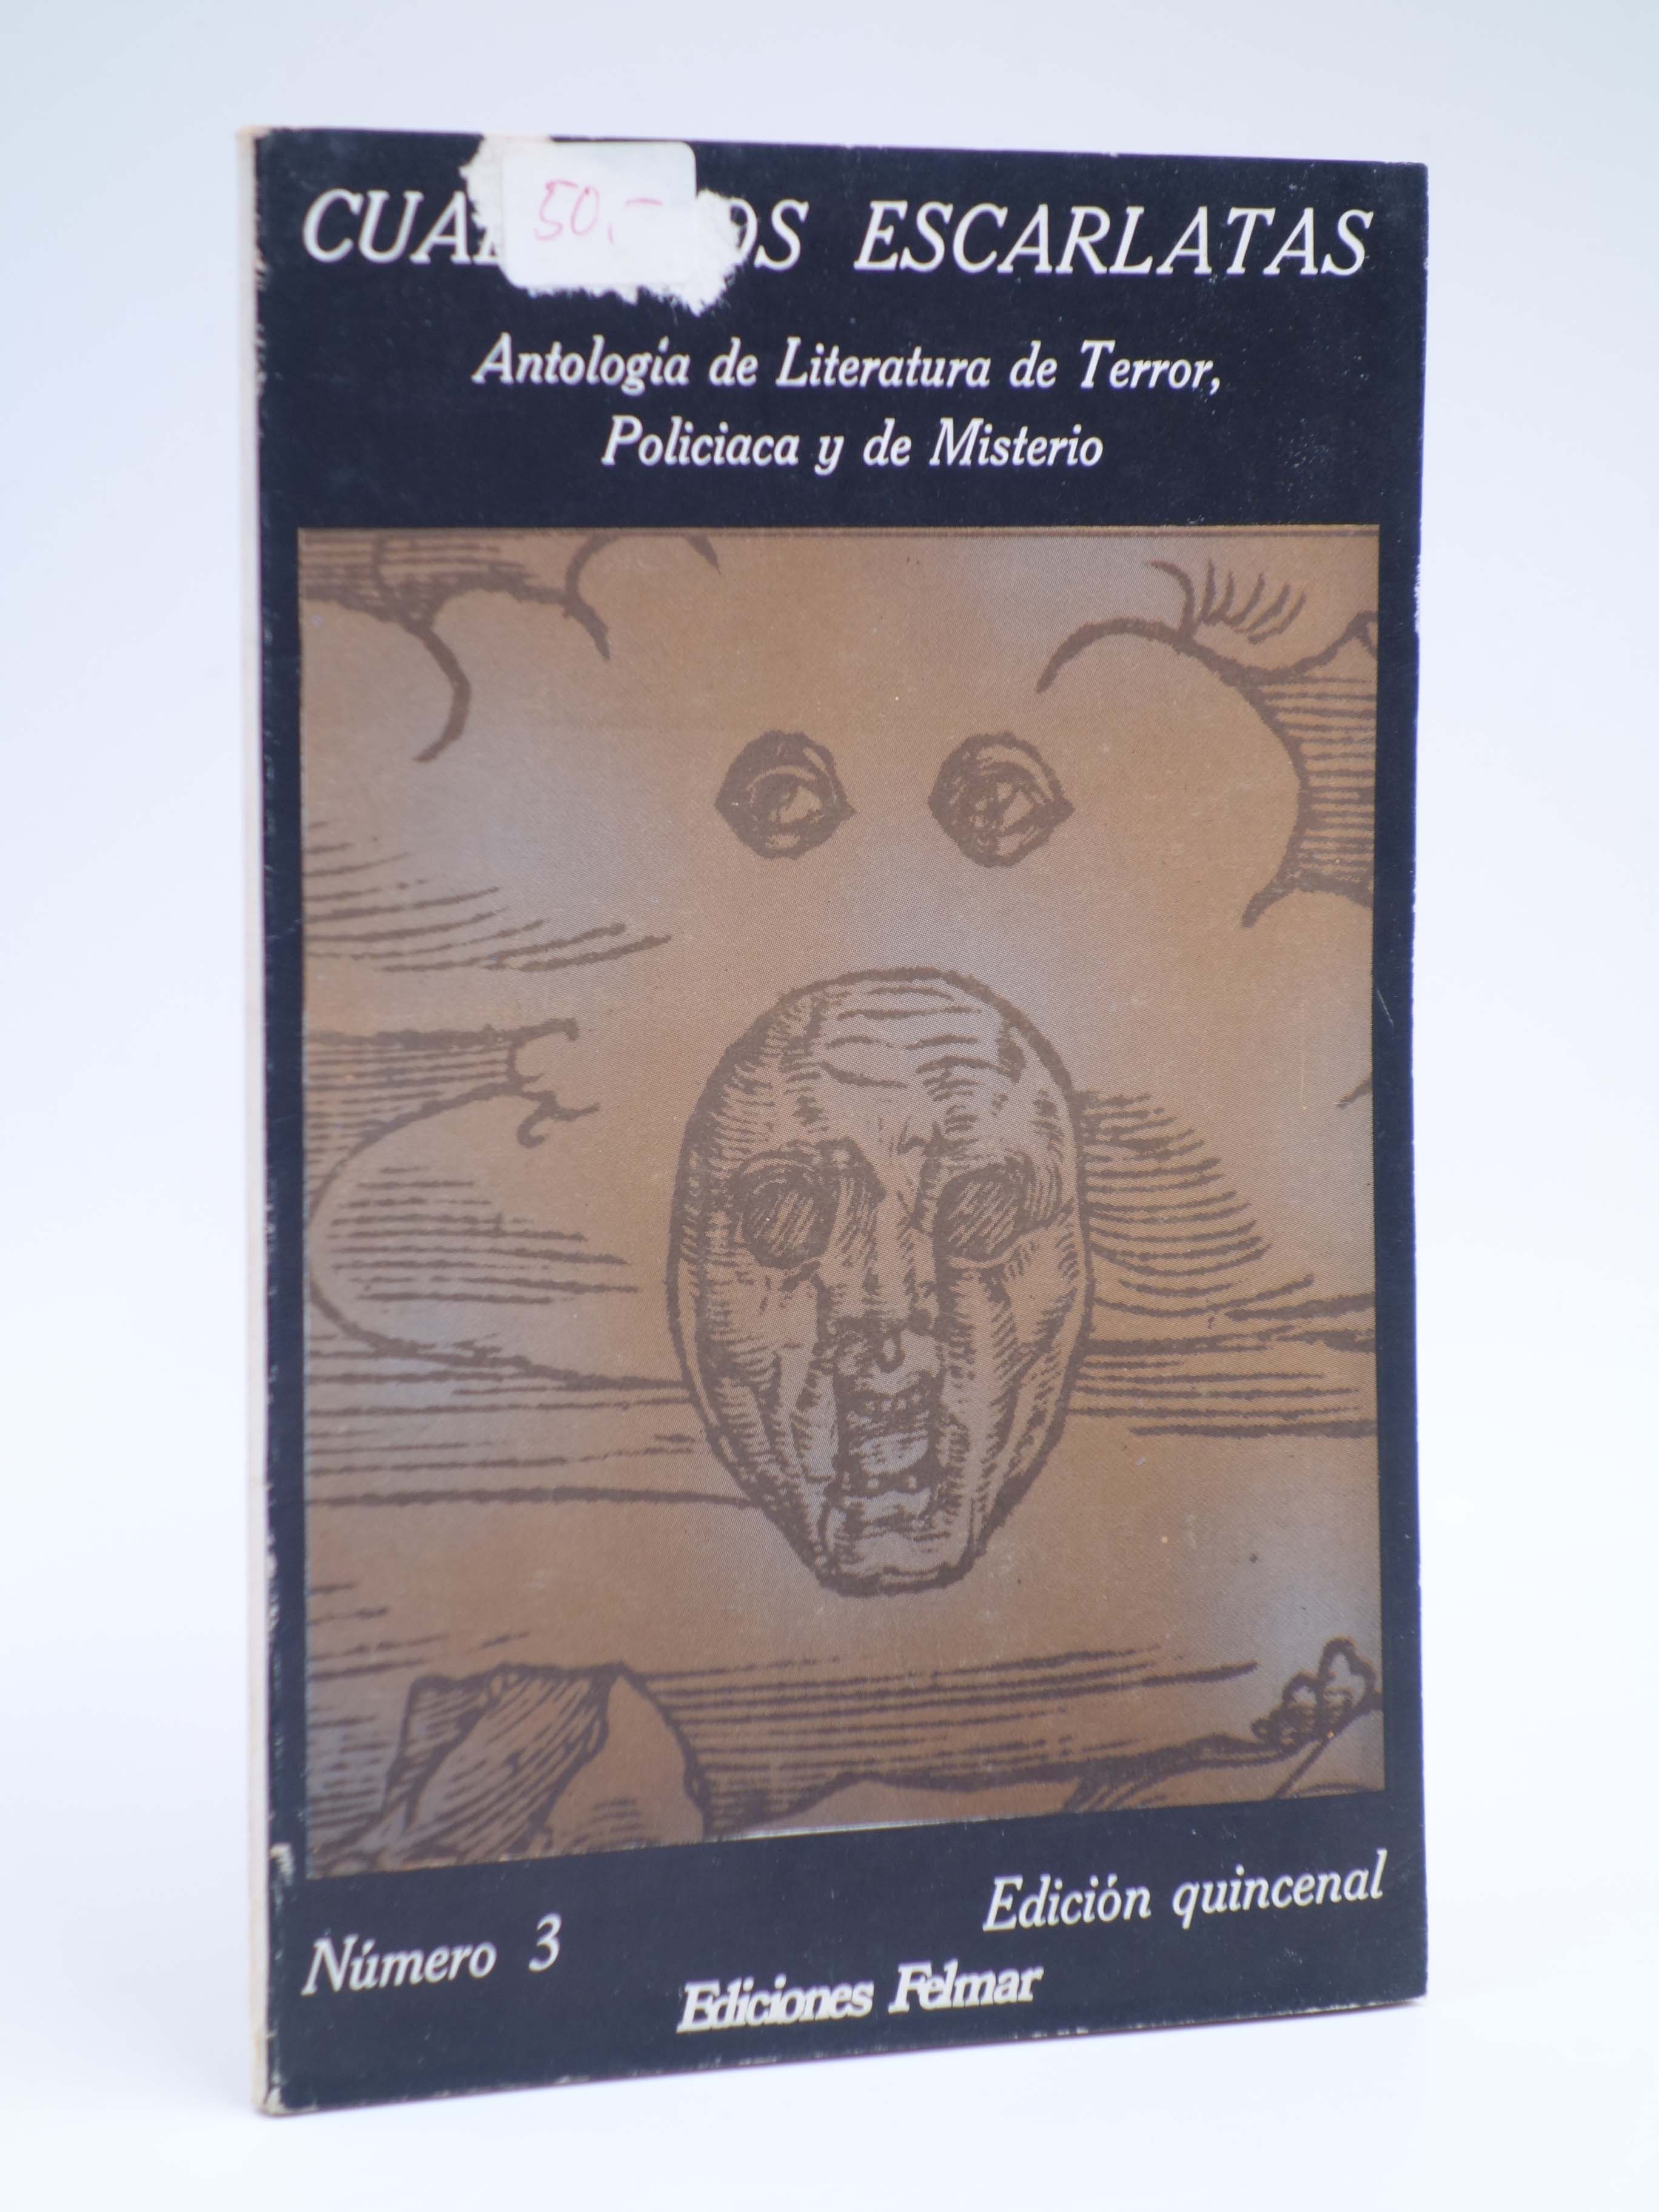 misterio - Ejemplares antiguos, descatalogados y libros de segunda mano -  Uniliber.com | Libros y Coleccionismo